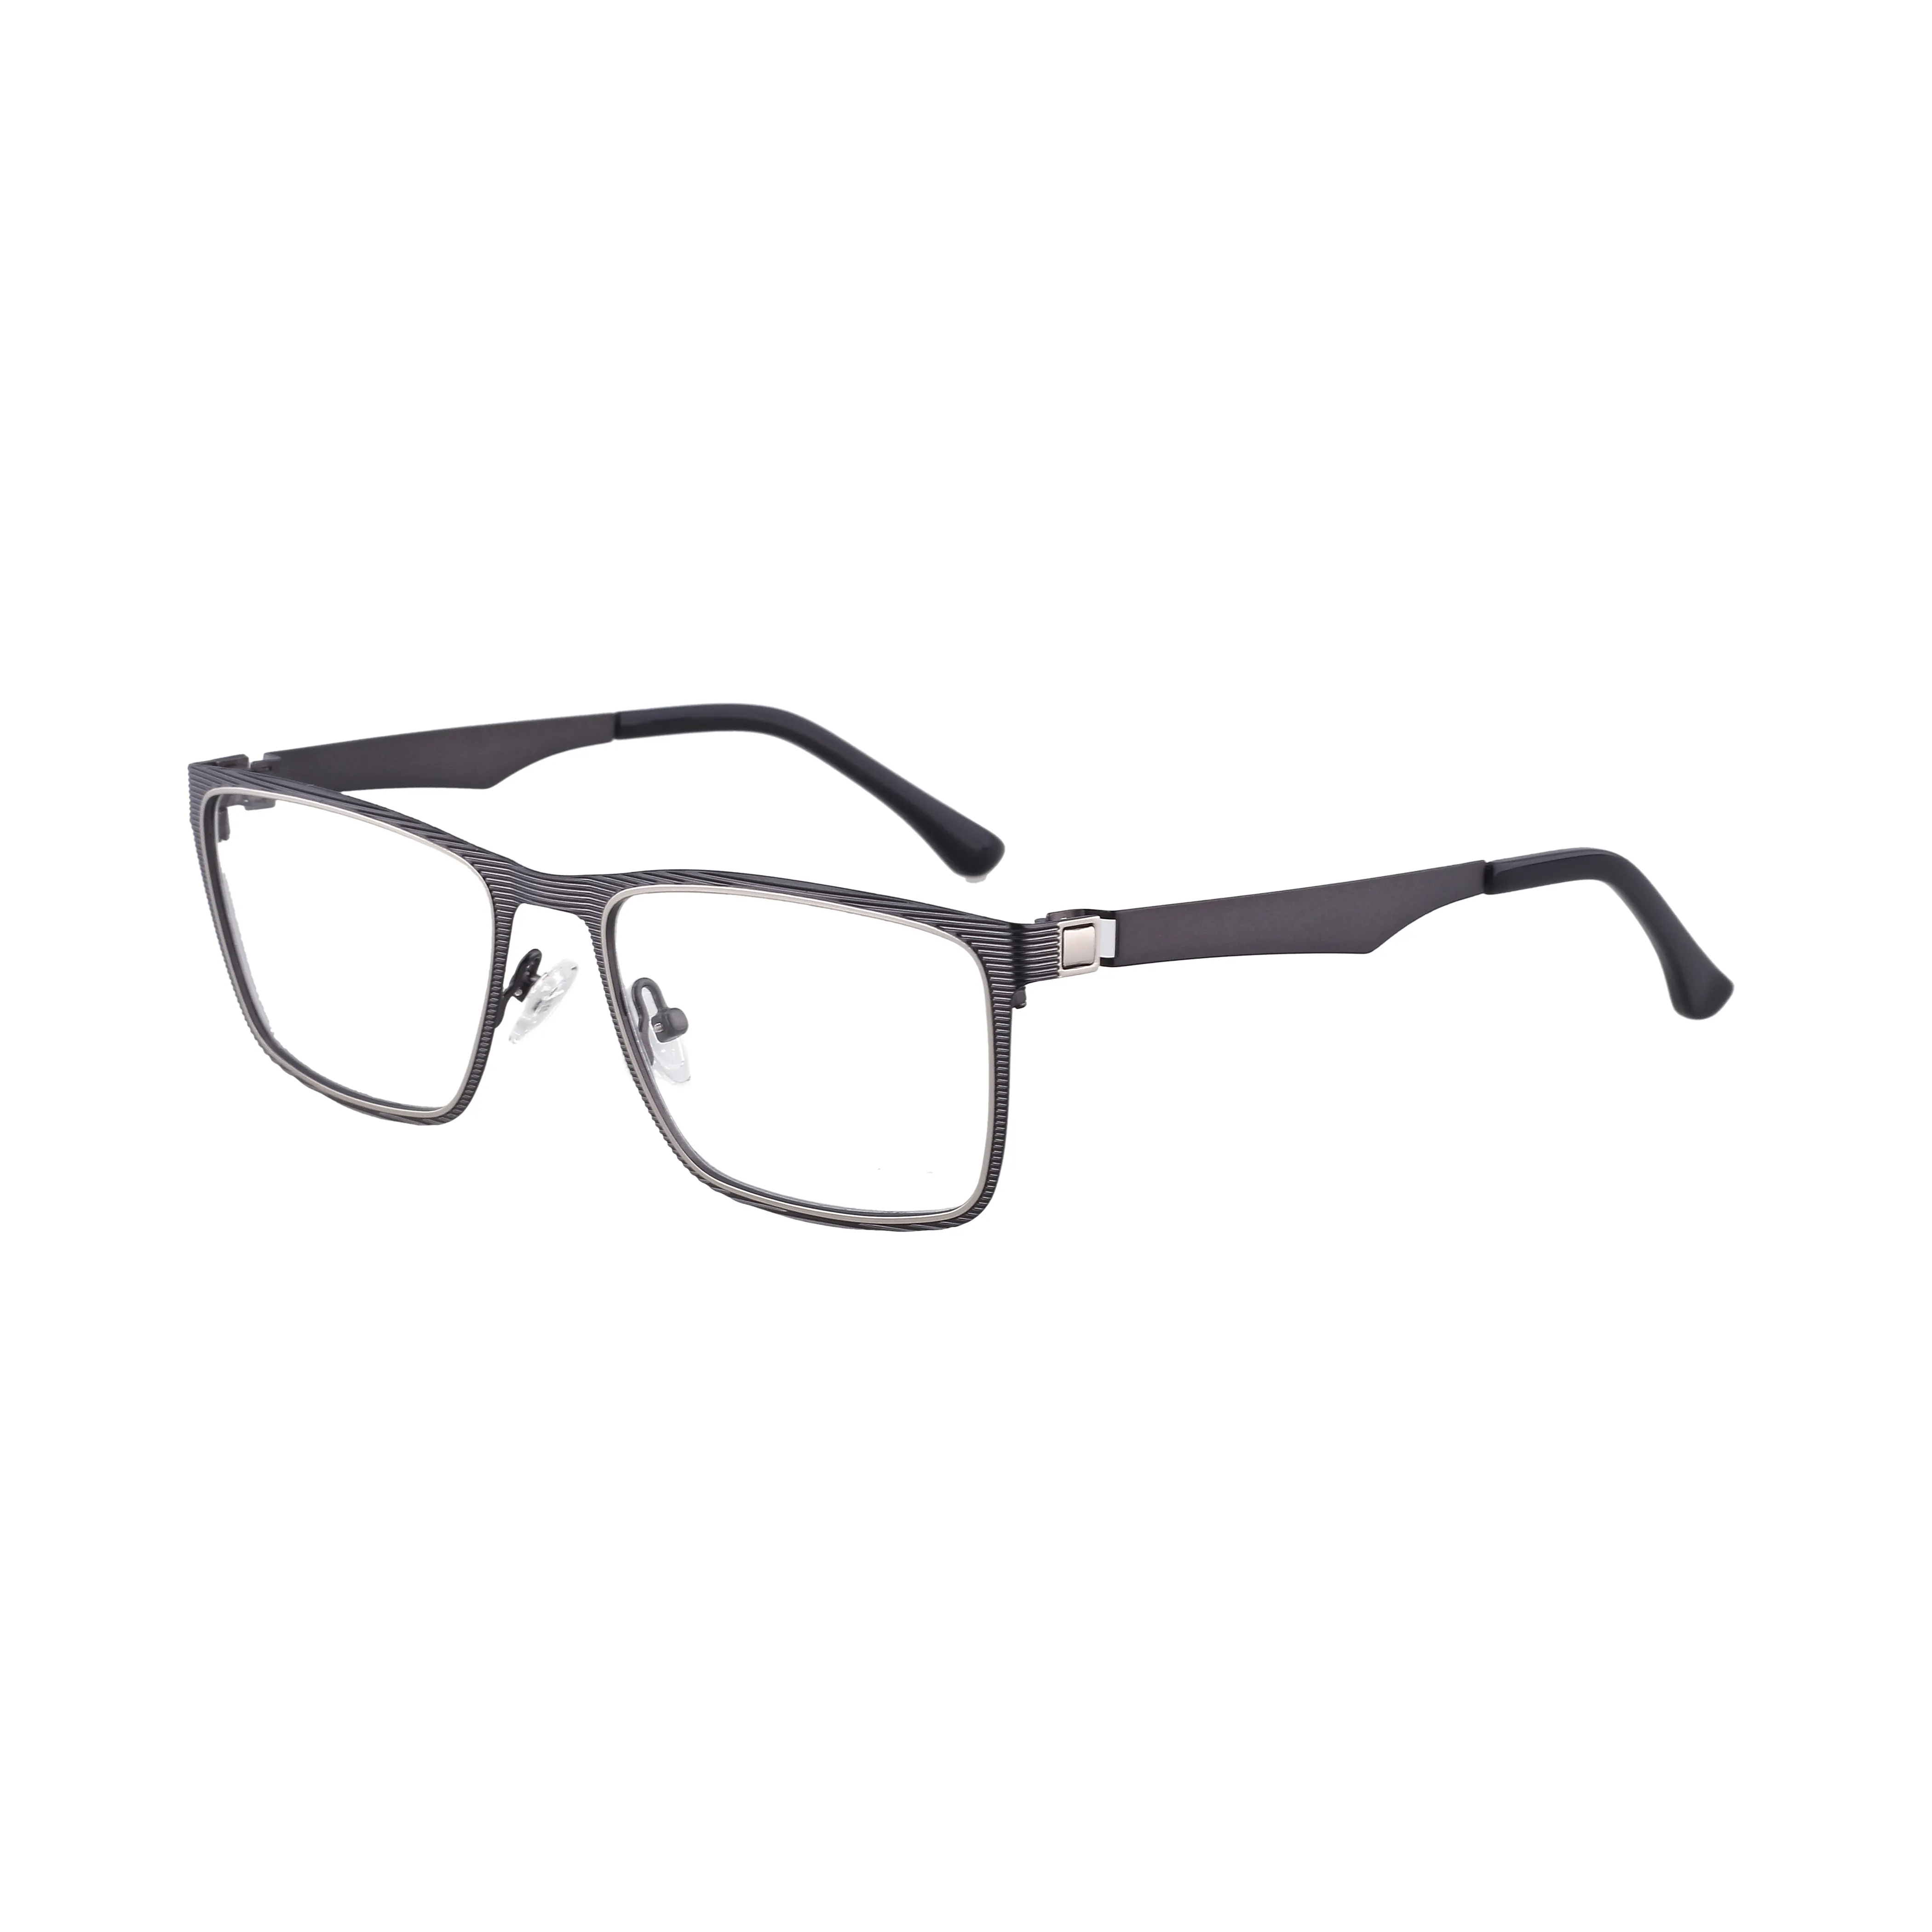 Gafas ópticas cuadradas de diseño elegante, lentes de aumento graduadas con montura de Metal, envío directo